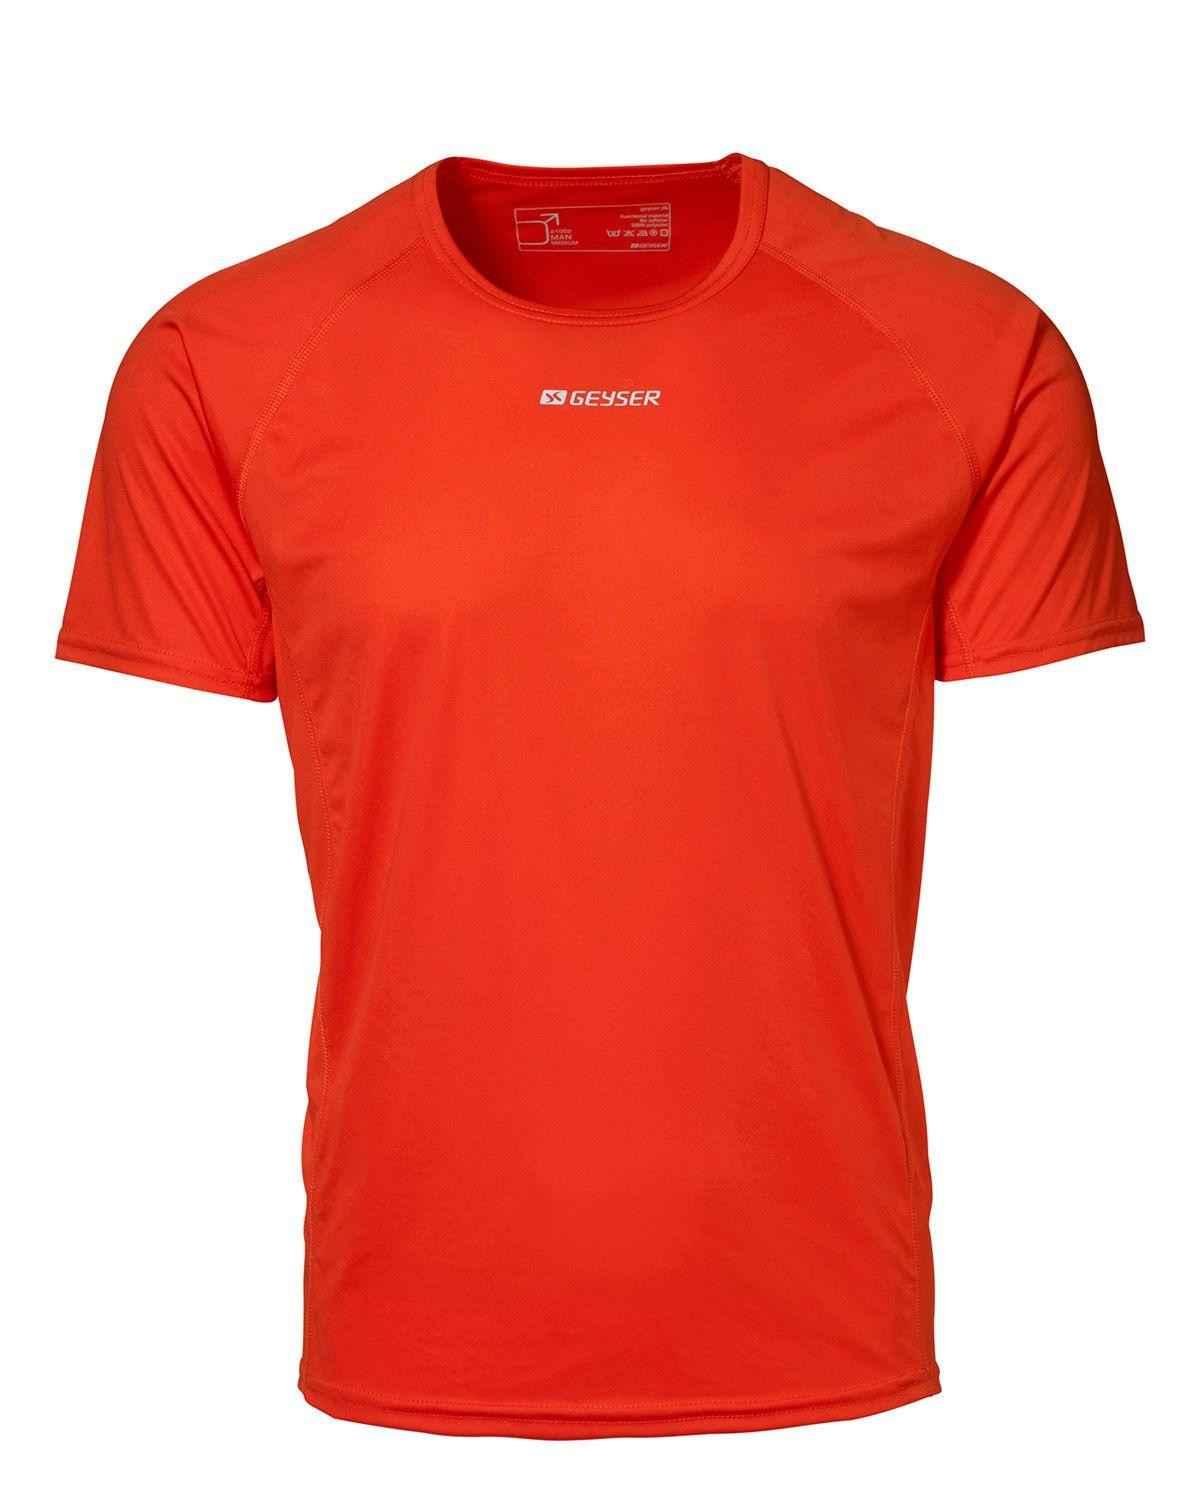 GEYSER Active T-shirt til Herre (Orange, XL)